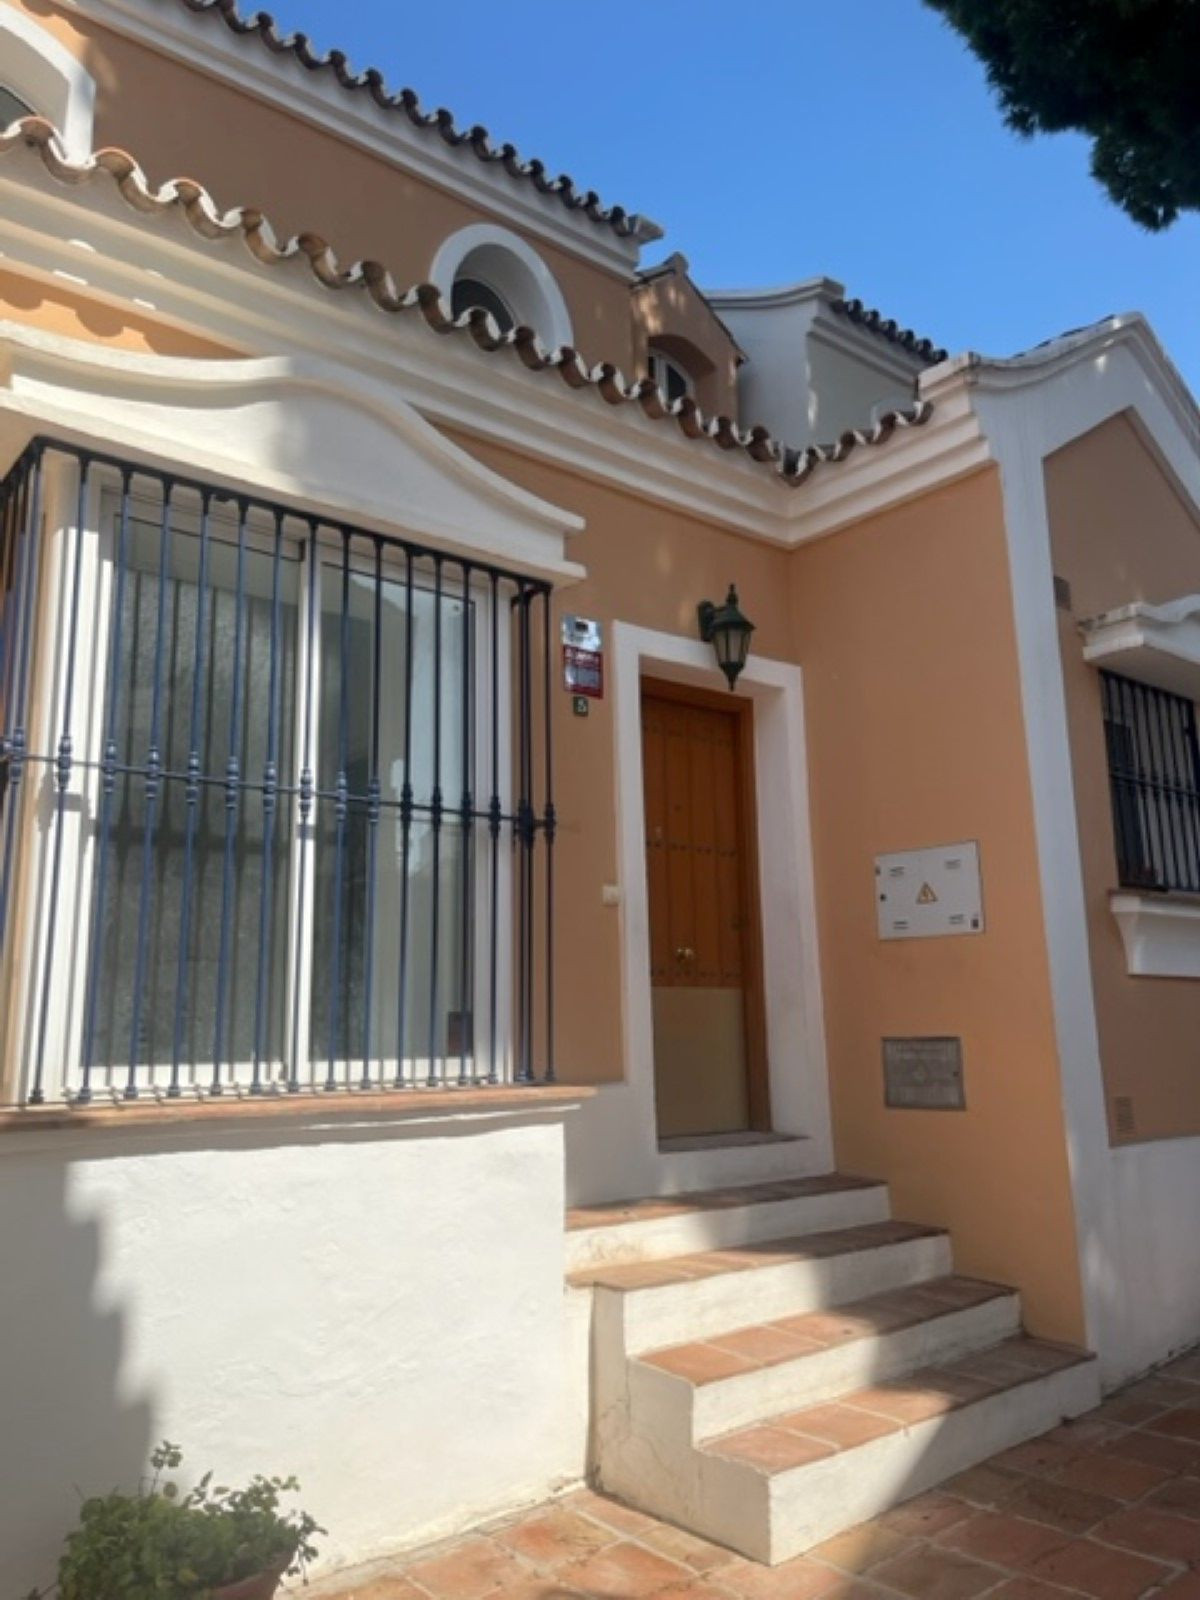 						Maison Jumelée  Mitoyenne
													en vente 
																			 à Nueva Andalucía
					